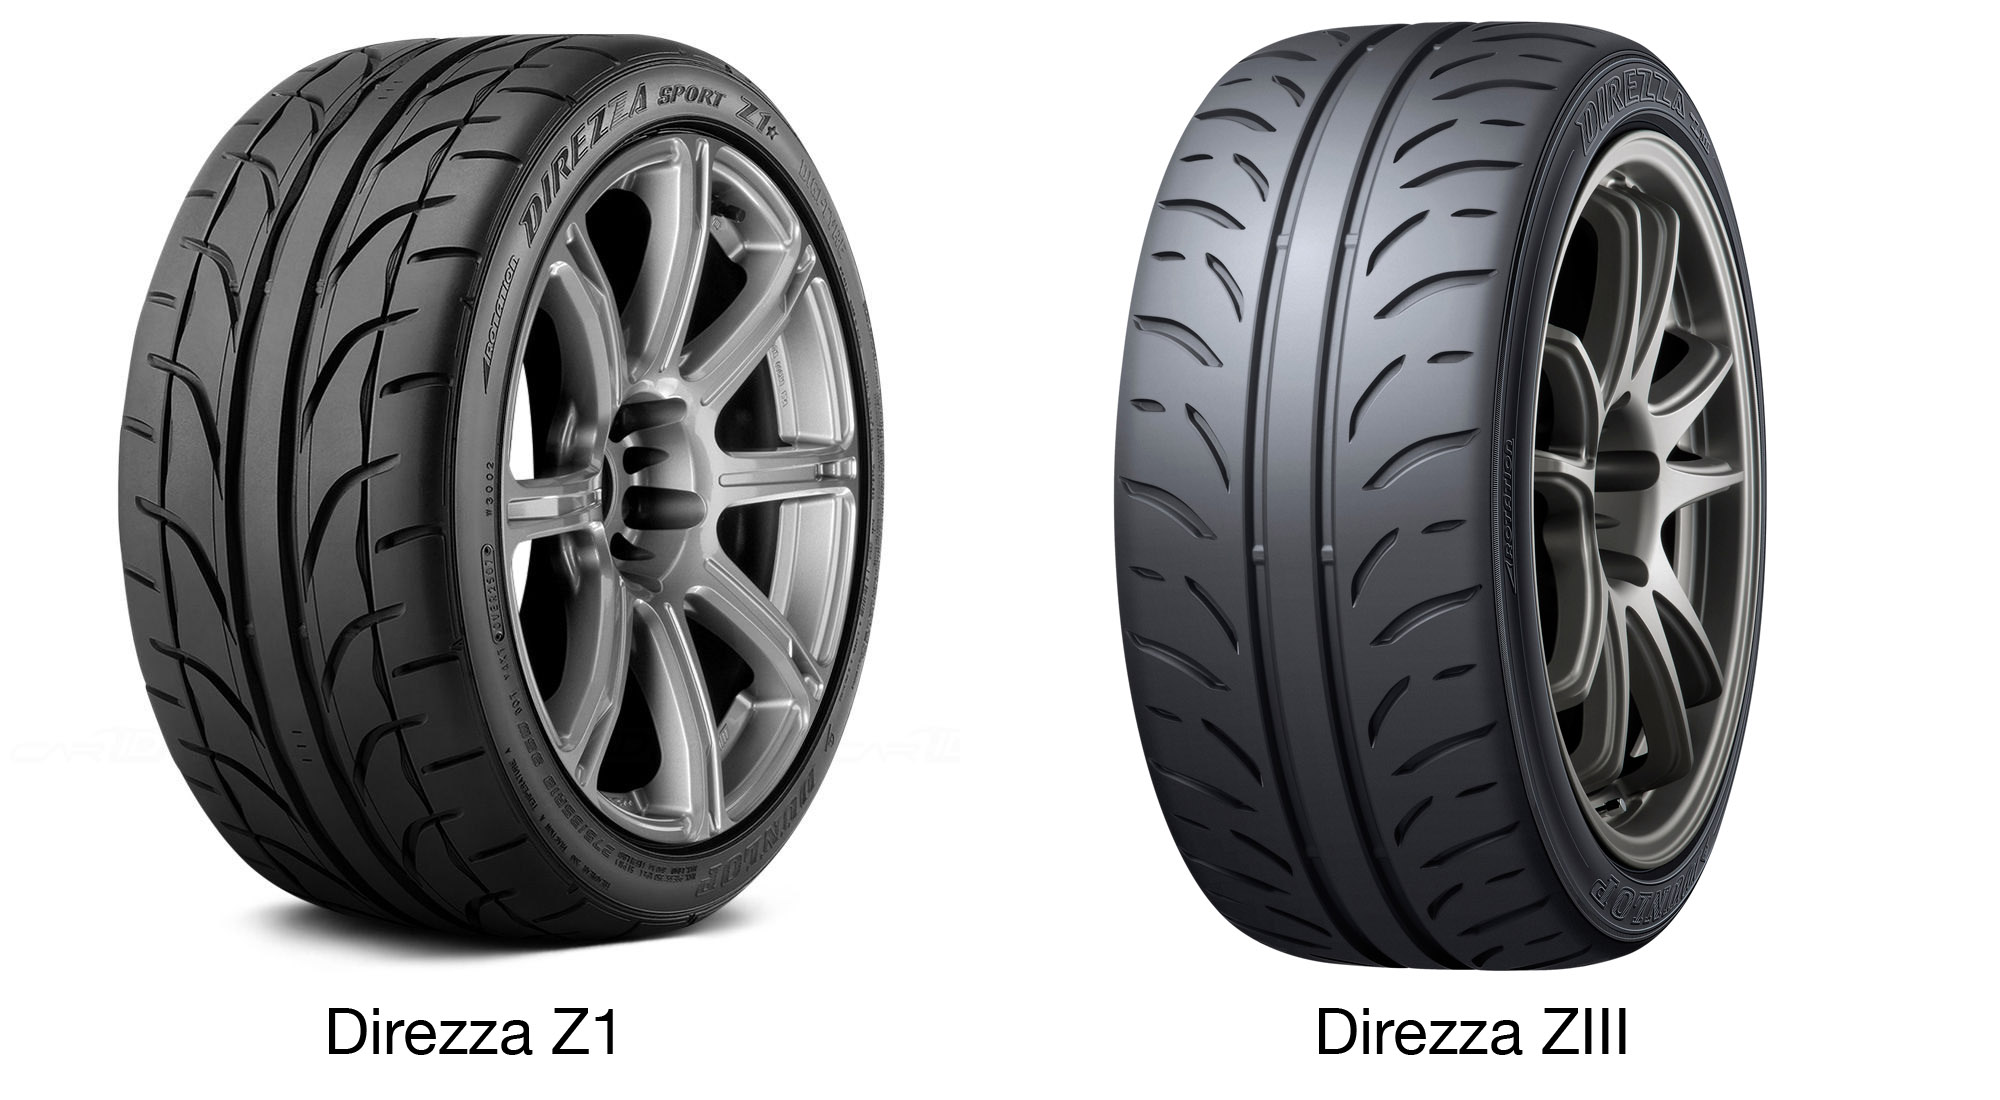 Dunlop Direzza Z1 Star Spec vs Direzza ZIII